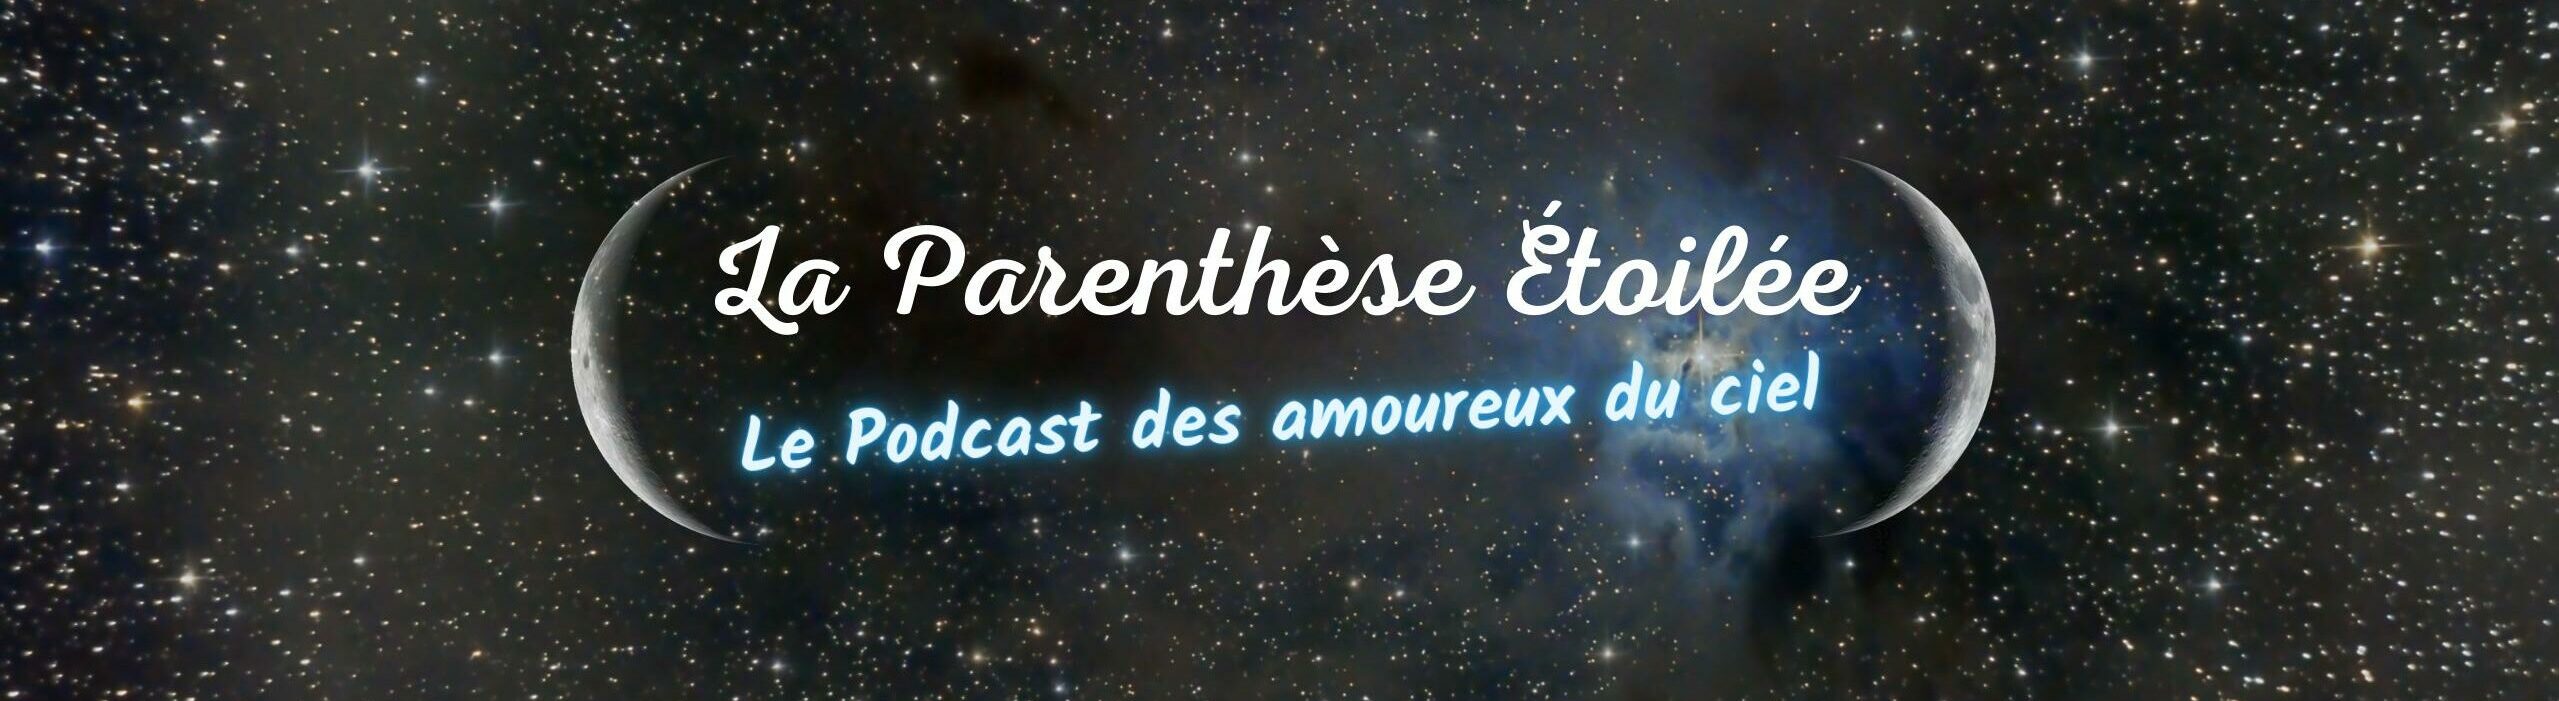 La Parenthèse Étoilée - Le podcast des amoureux du ciel